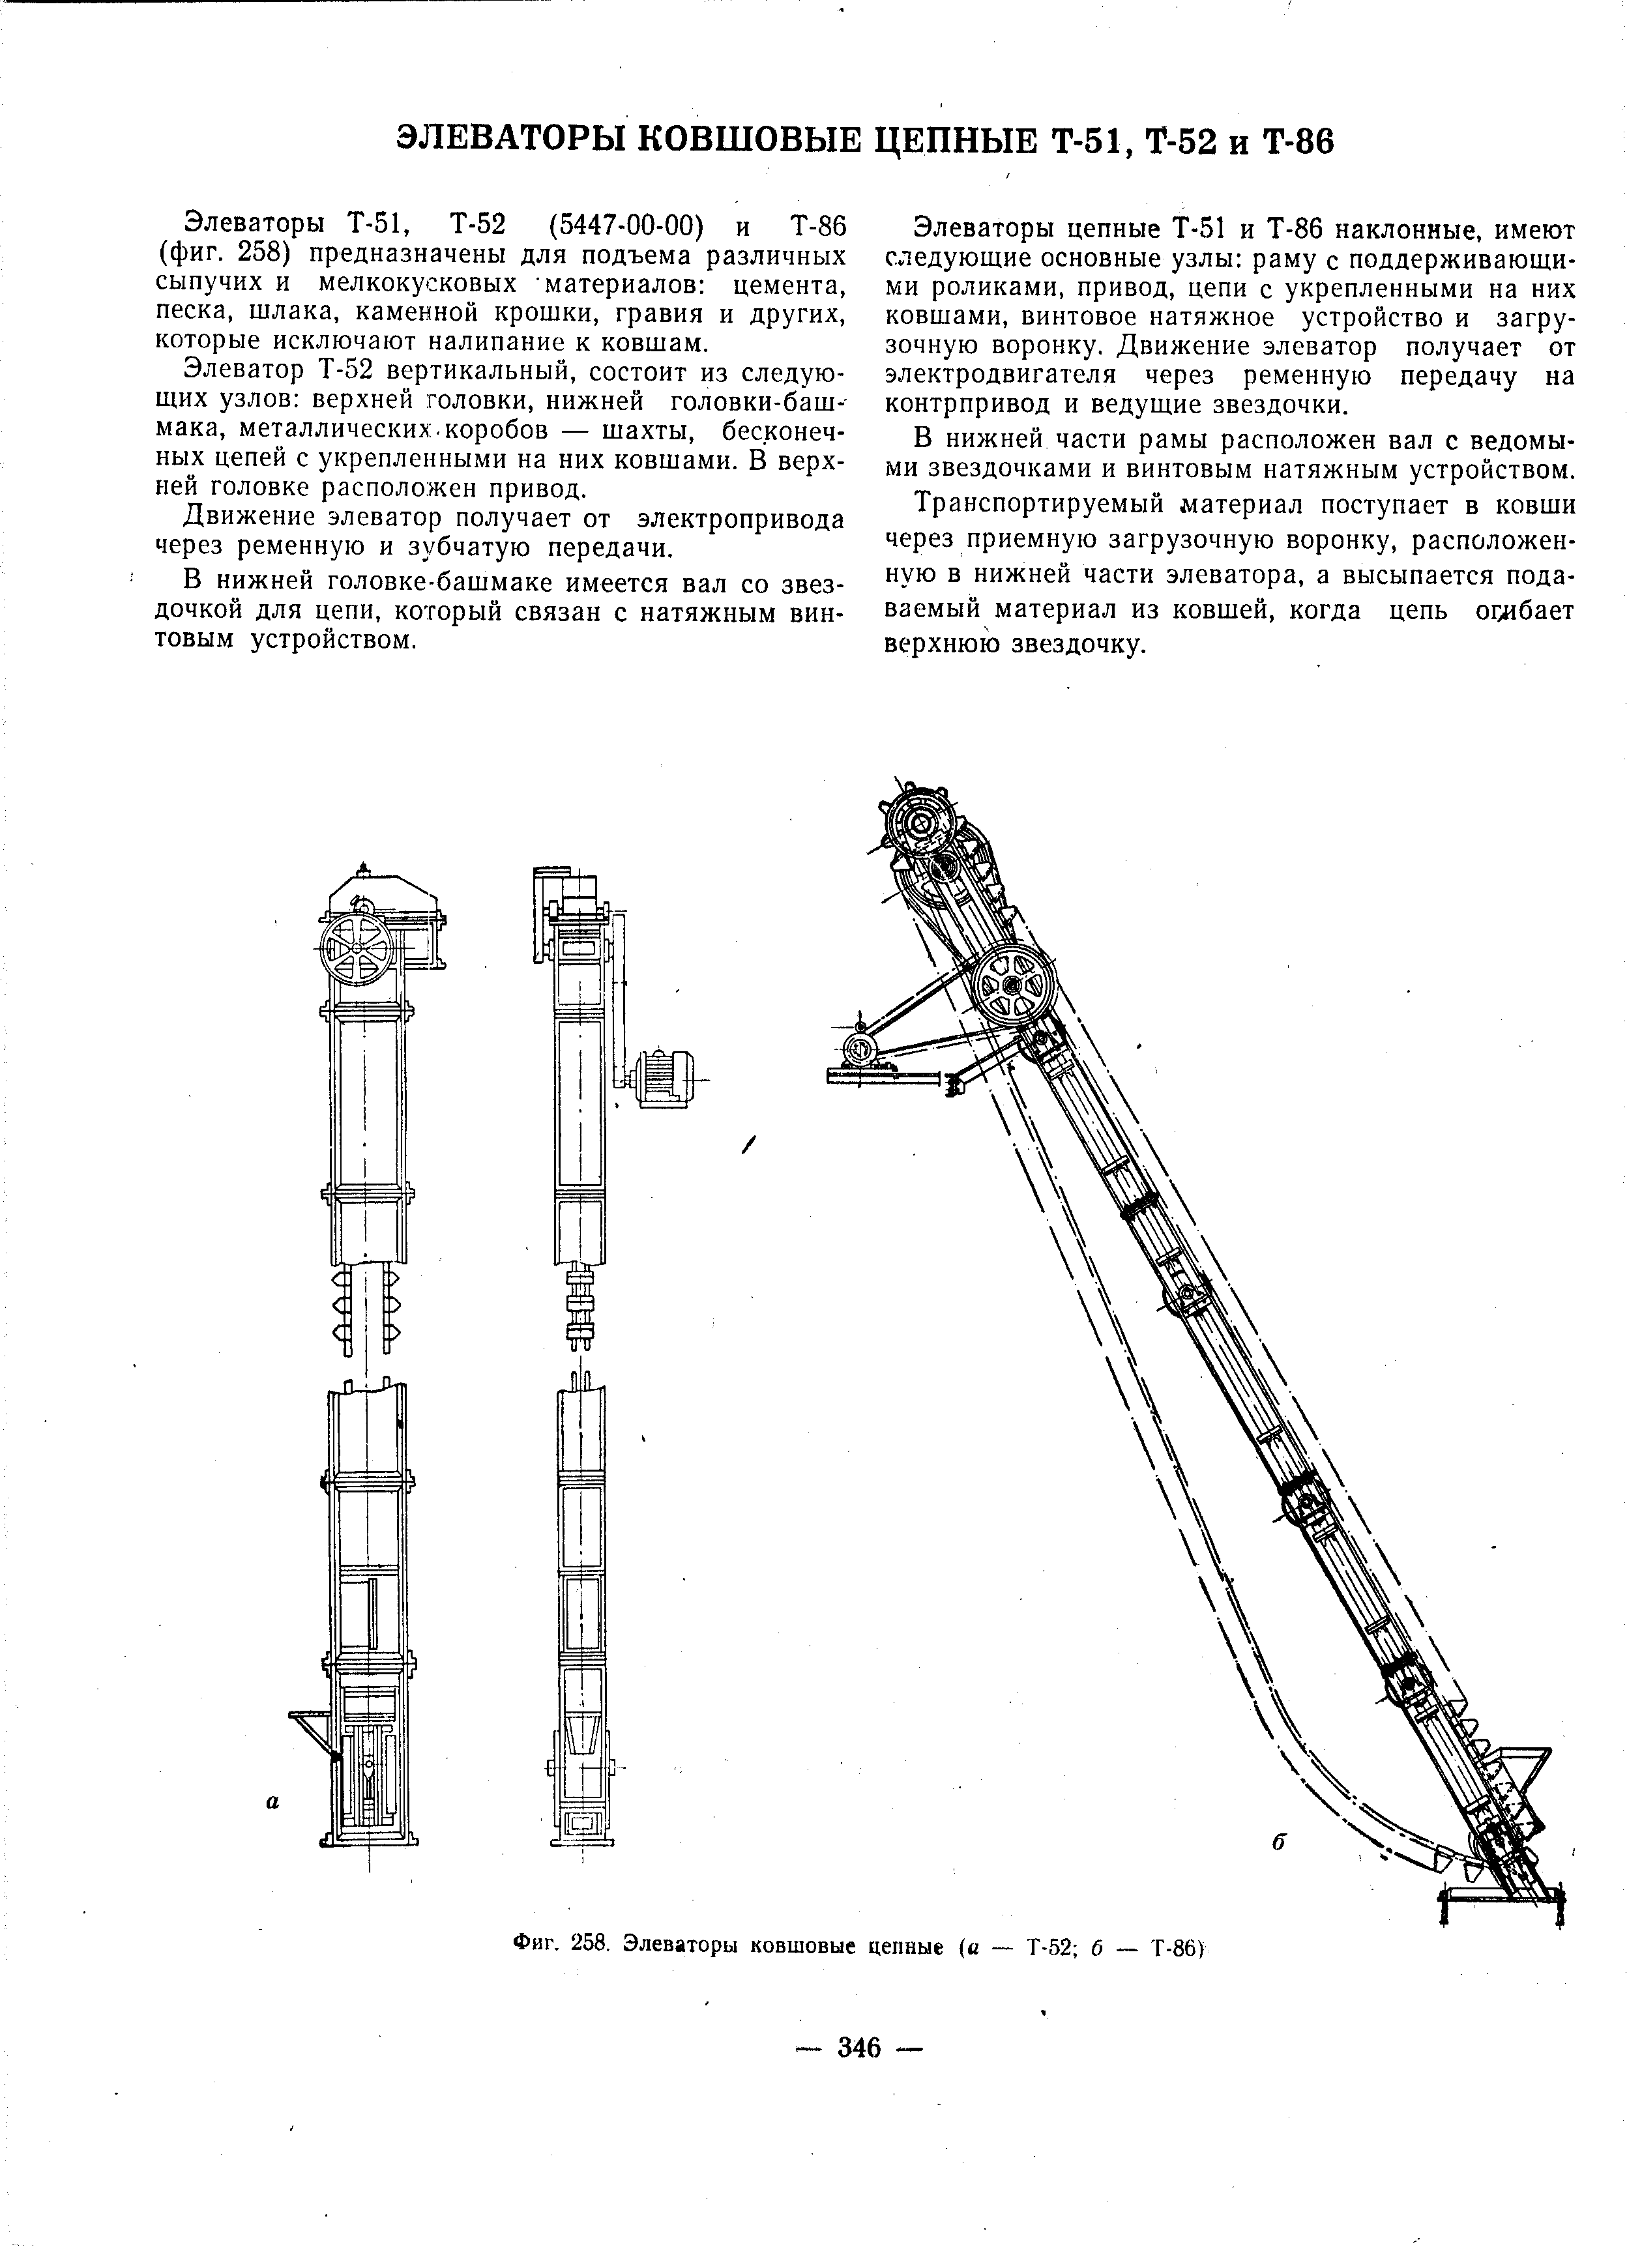 Фиг. 258. Элеваторы ковшовые цепные ( — Т-52 б Т-86)
